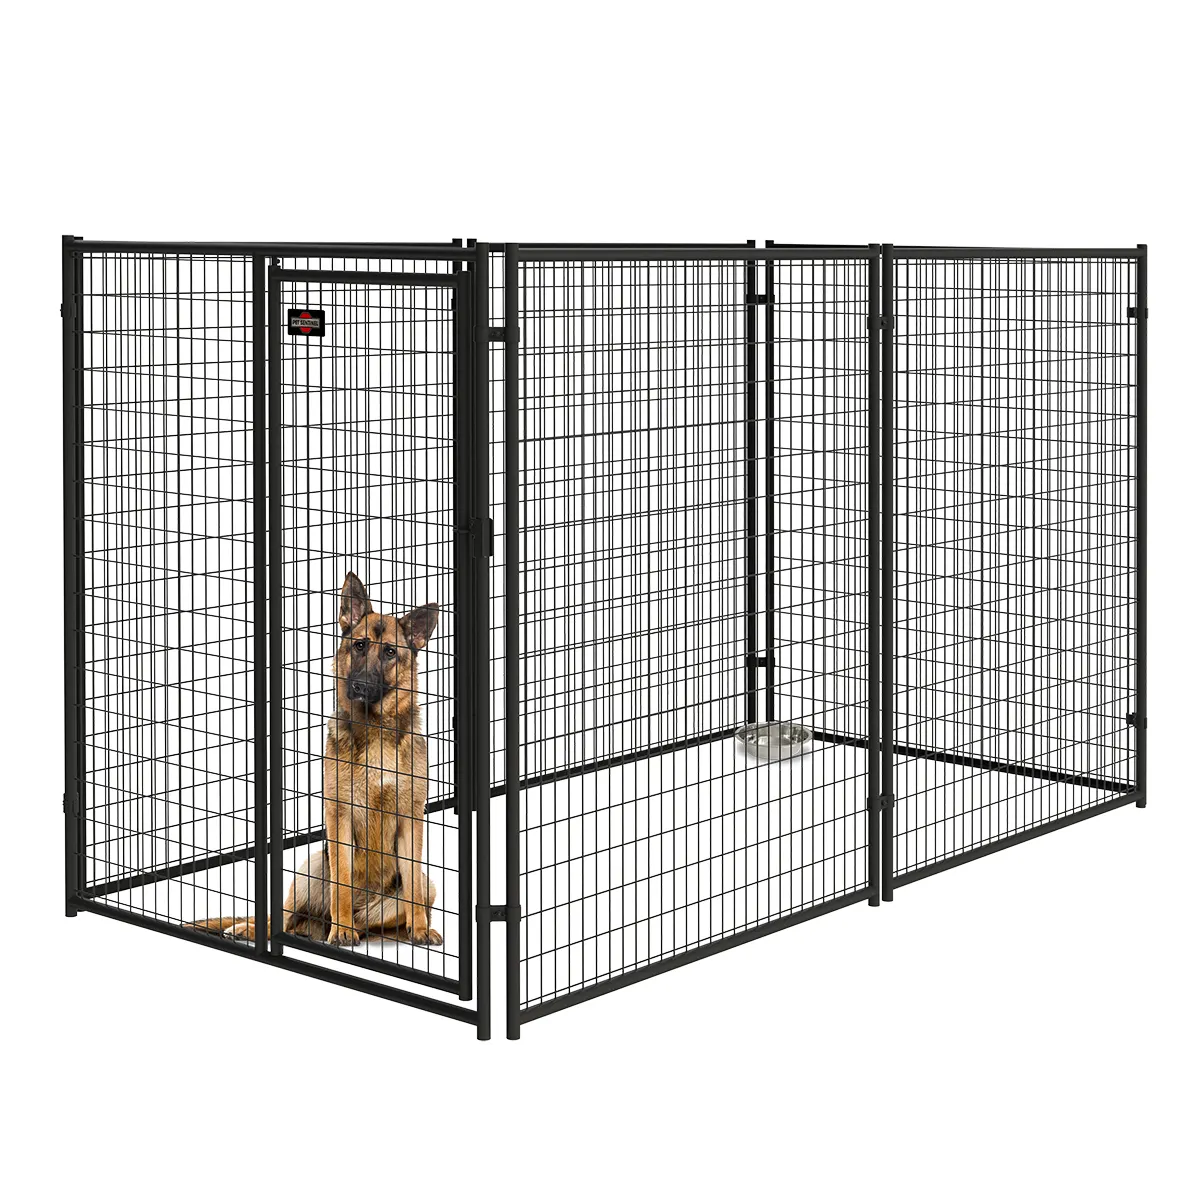 Cages d'animaux pour élever le chat, le chien, pièges pour attraper le raton laveur, le renard, le lièvre